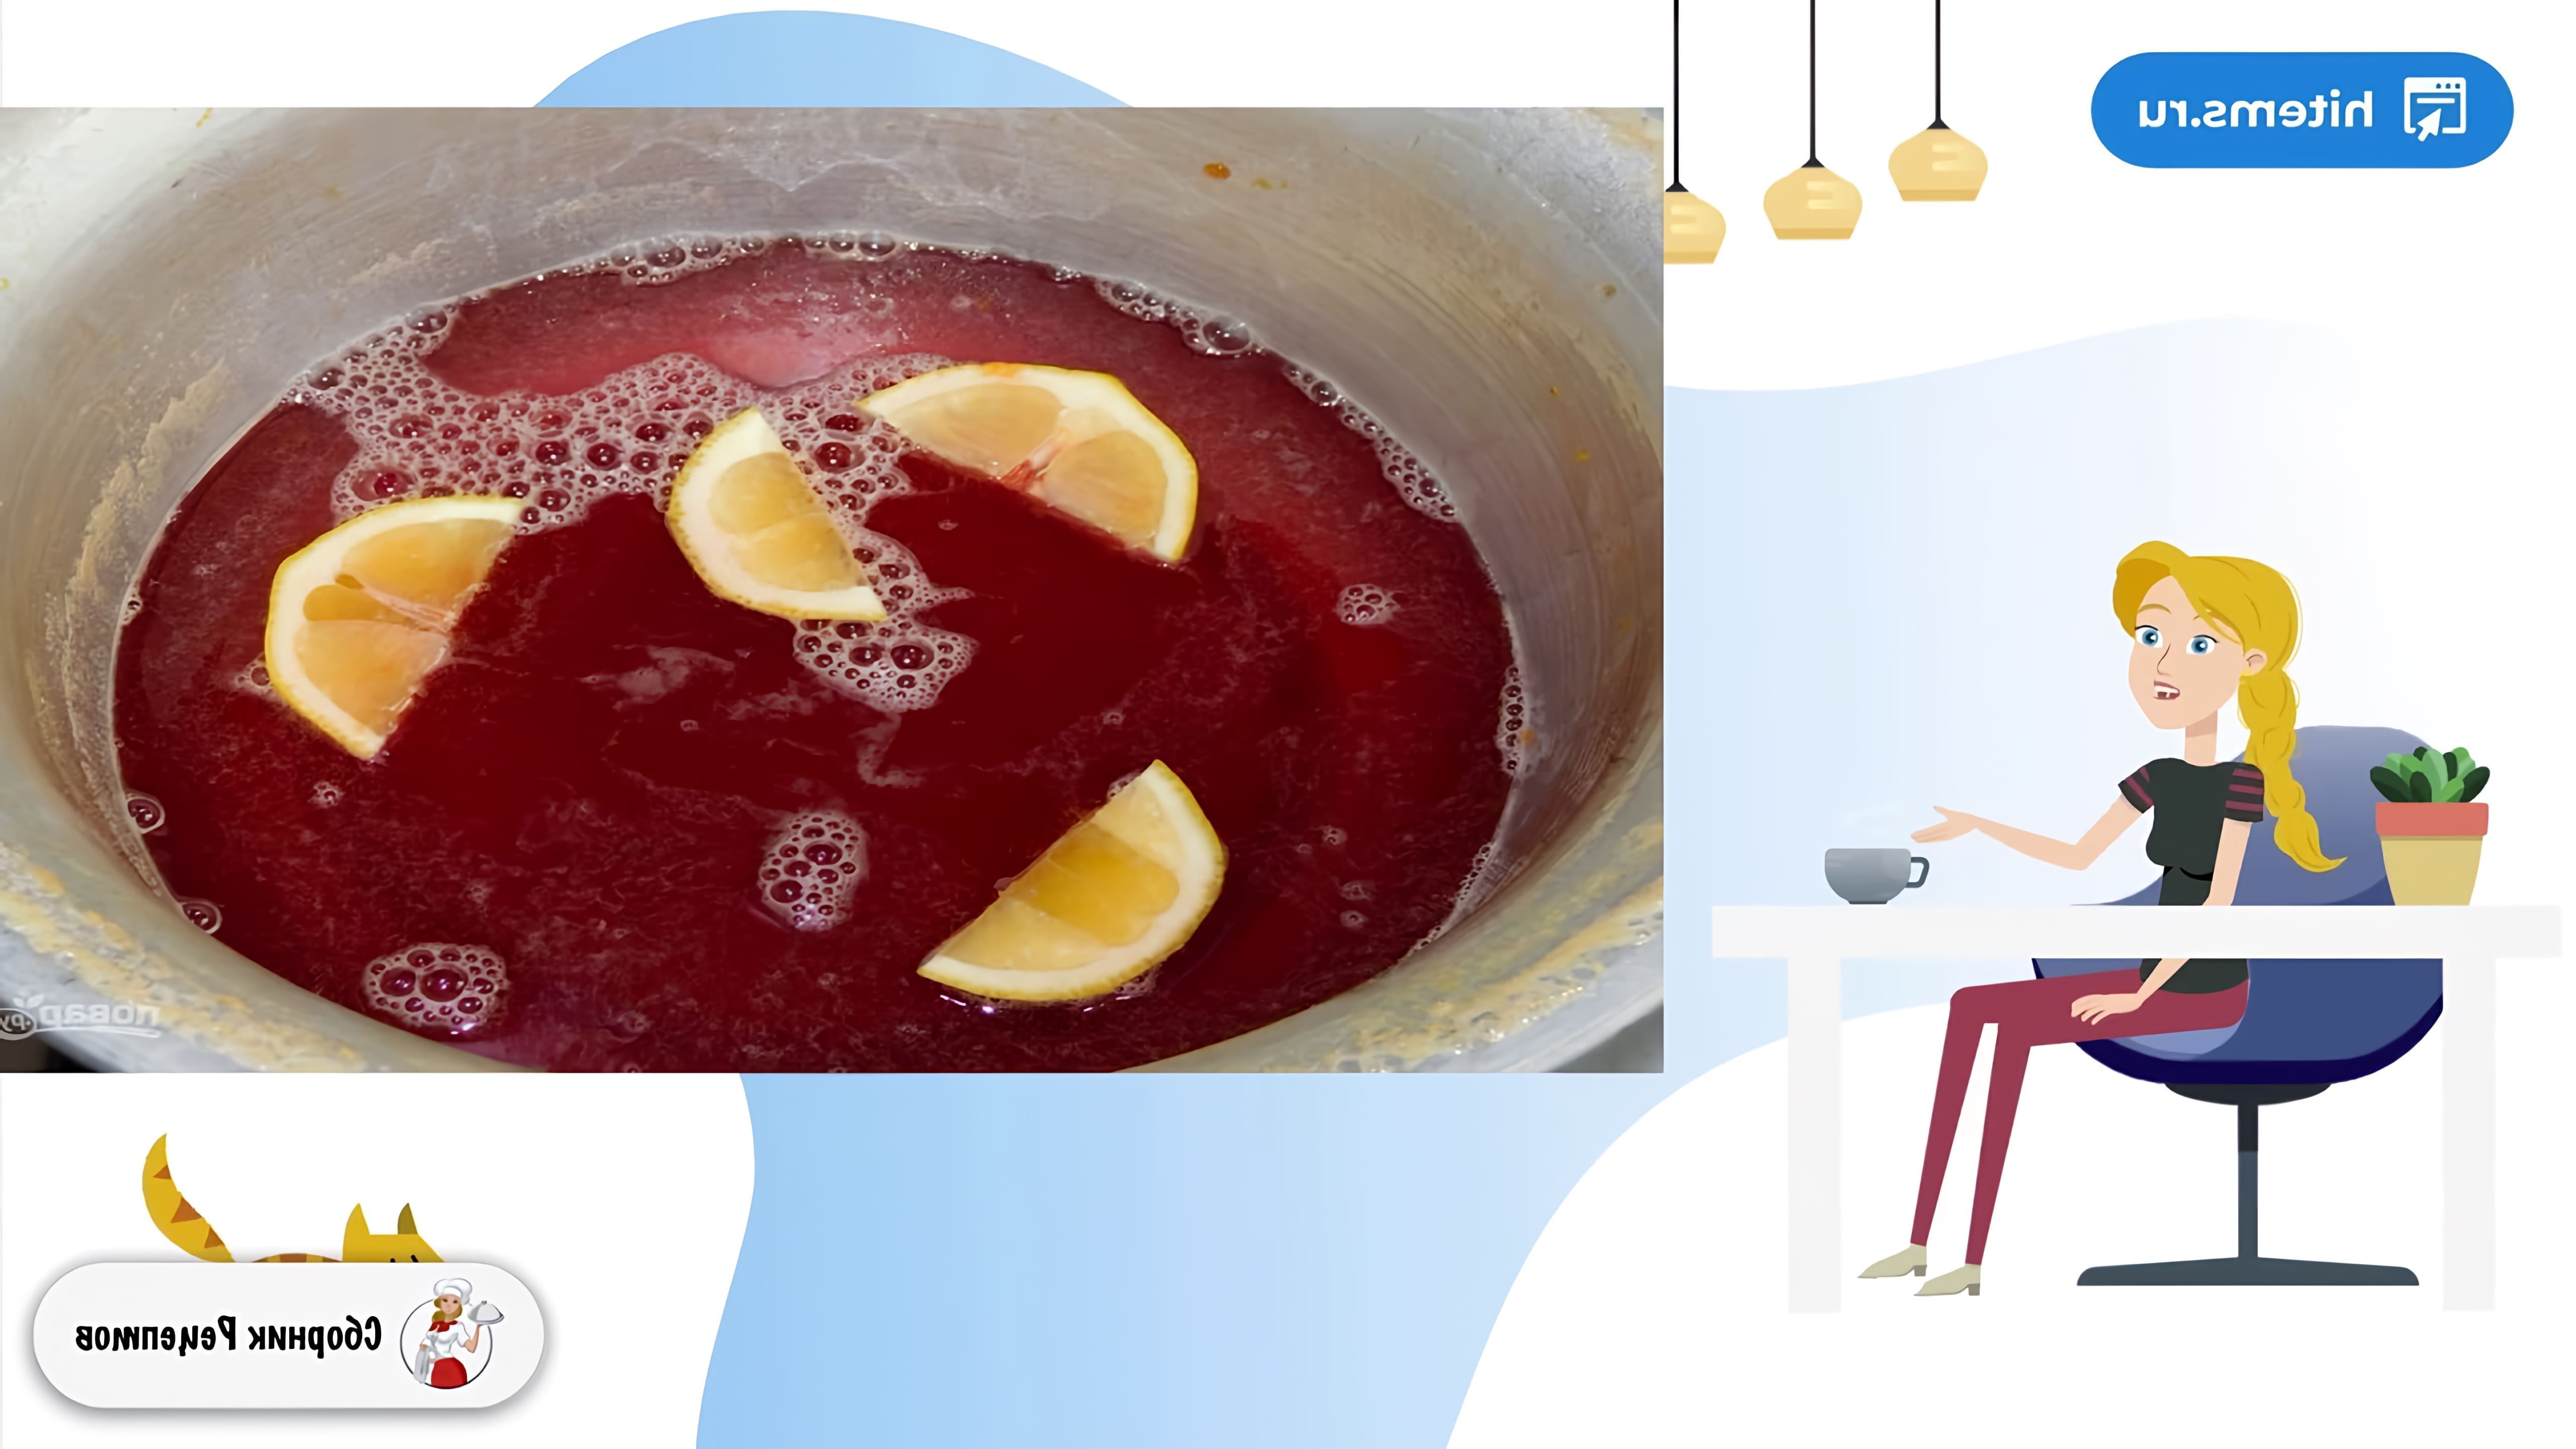 В этом видео демонстрируется процесс приготовления карамельного варенья из нектаринов